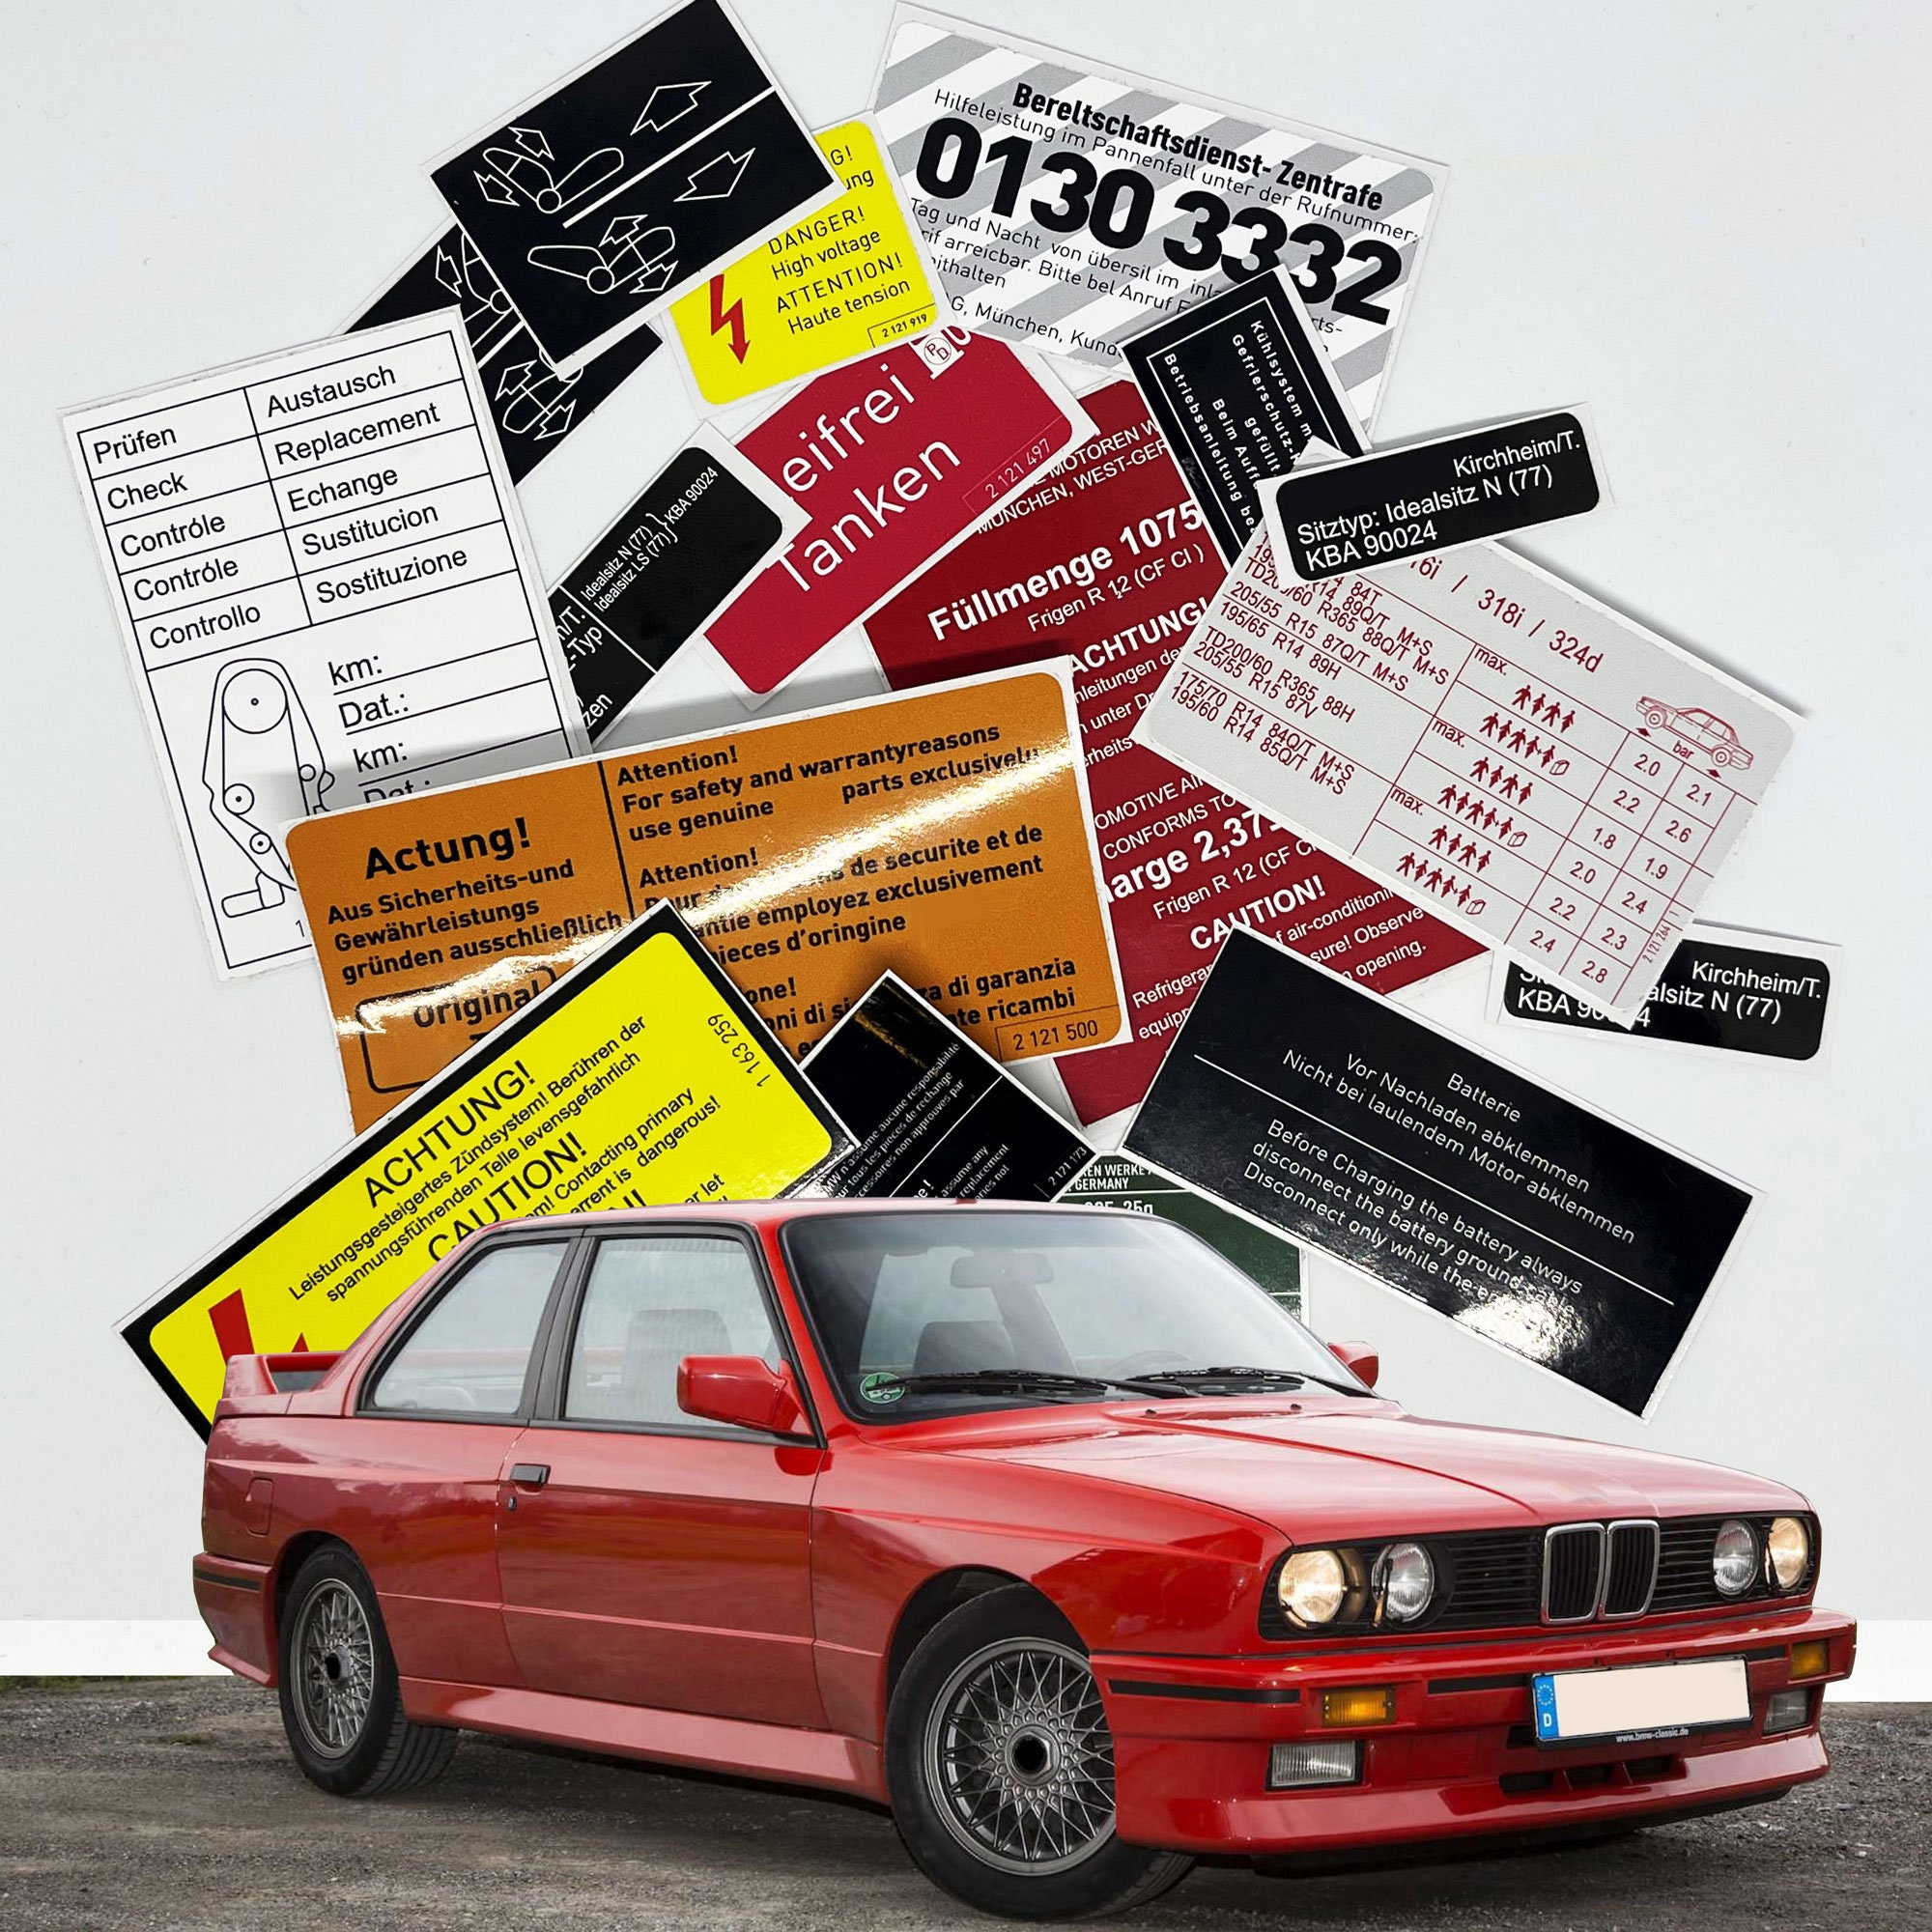 Adesivi / BMW M3 E30 / adesivo per auto, amante dell'auto, miglior regalo,  decalcomania per auto, adesivo da corsa, decalcomania da corsa, adesivo BMW,  Bimmer, auto classica, Pjr -  Italia